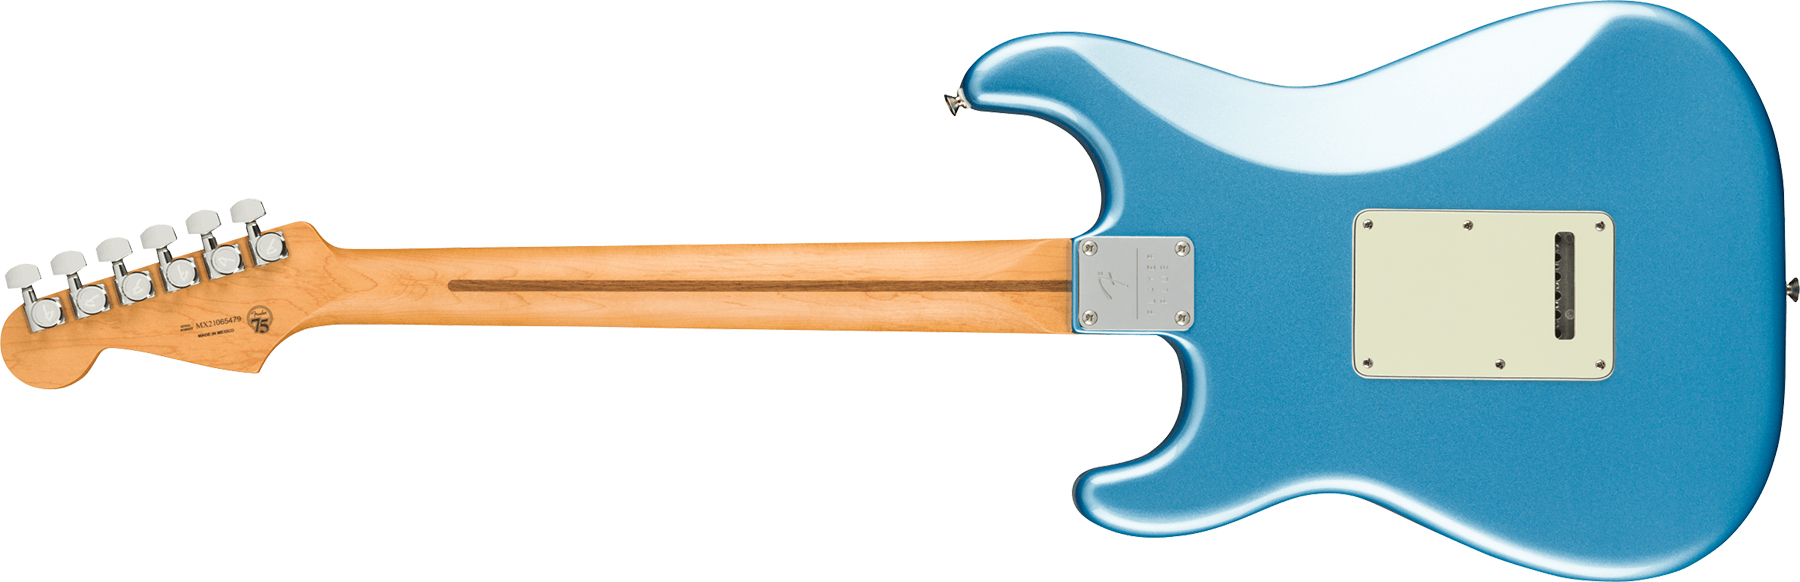 Fender Strat Player Plus Mex 3s Trem Pf - Opal Spark - Guitare Électrique Forme Str - Variation 1